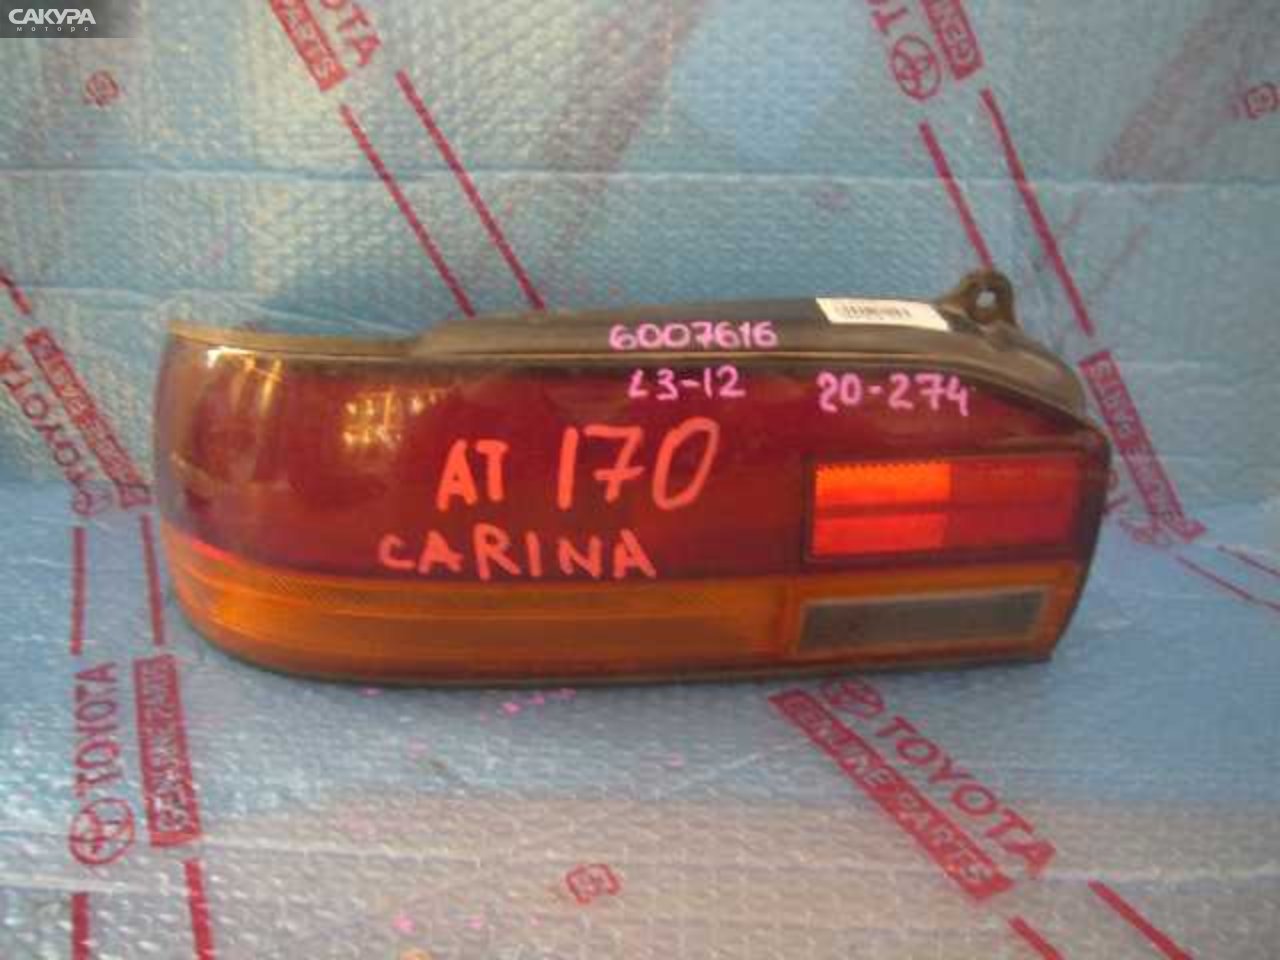 Фонарь стоп-сигнала левый Toyota Carina AT170 20-274: купить в Сакура Кемерово.